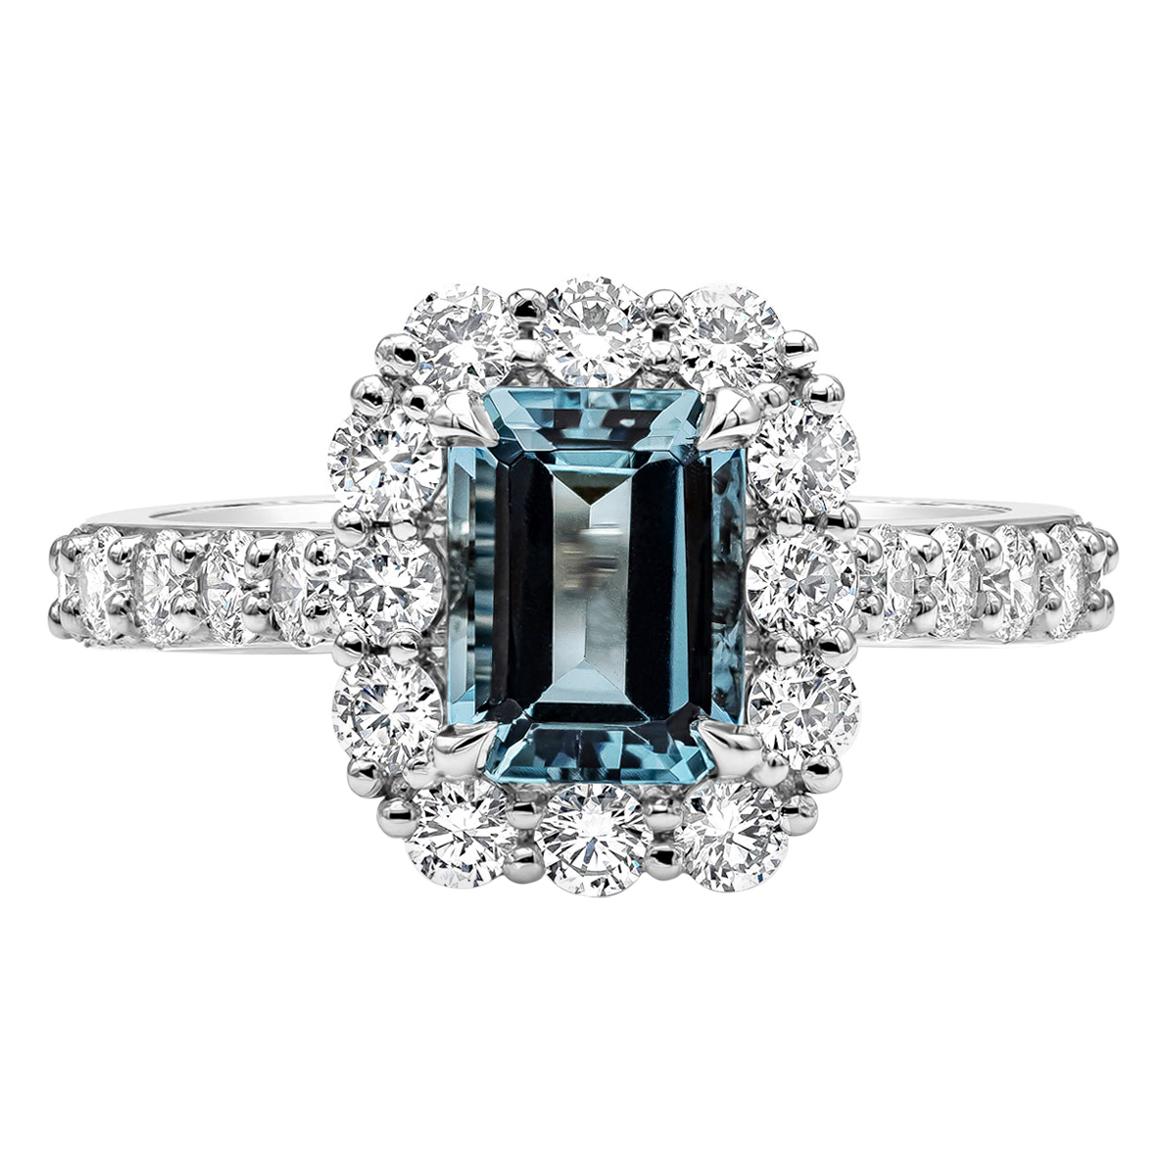 1.39 Carat Aquamarine and Diamond Halo Engagement Ring in Platinum